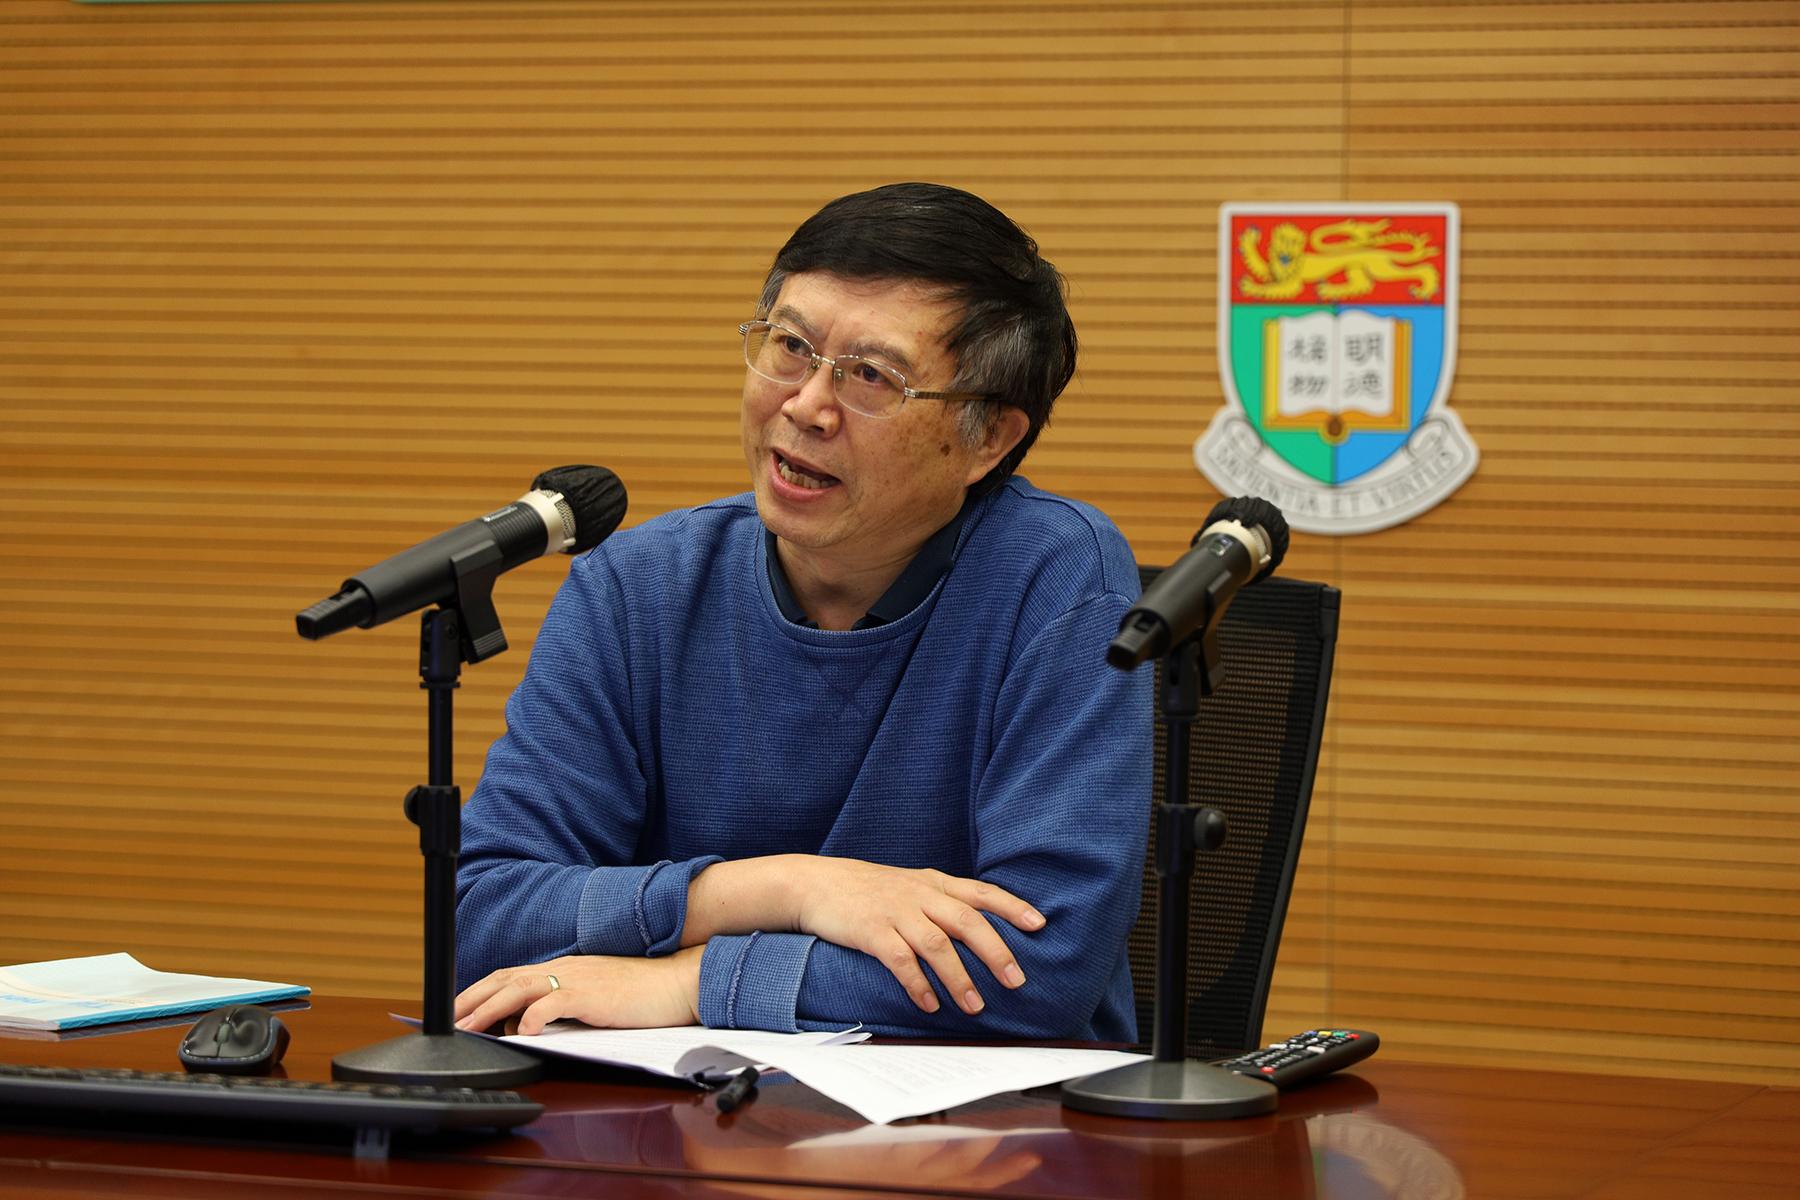 李玉國教授在香港大學 COVID-19 演講 2020 上發言